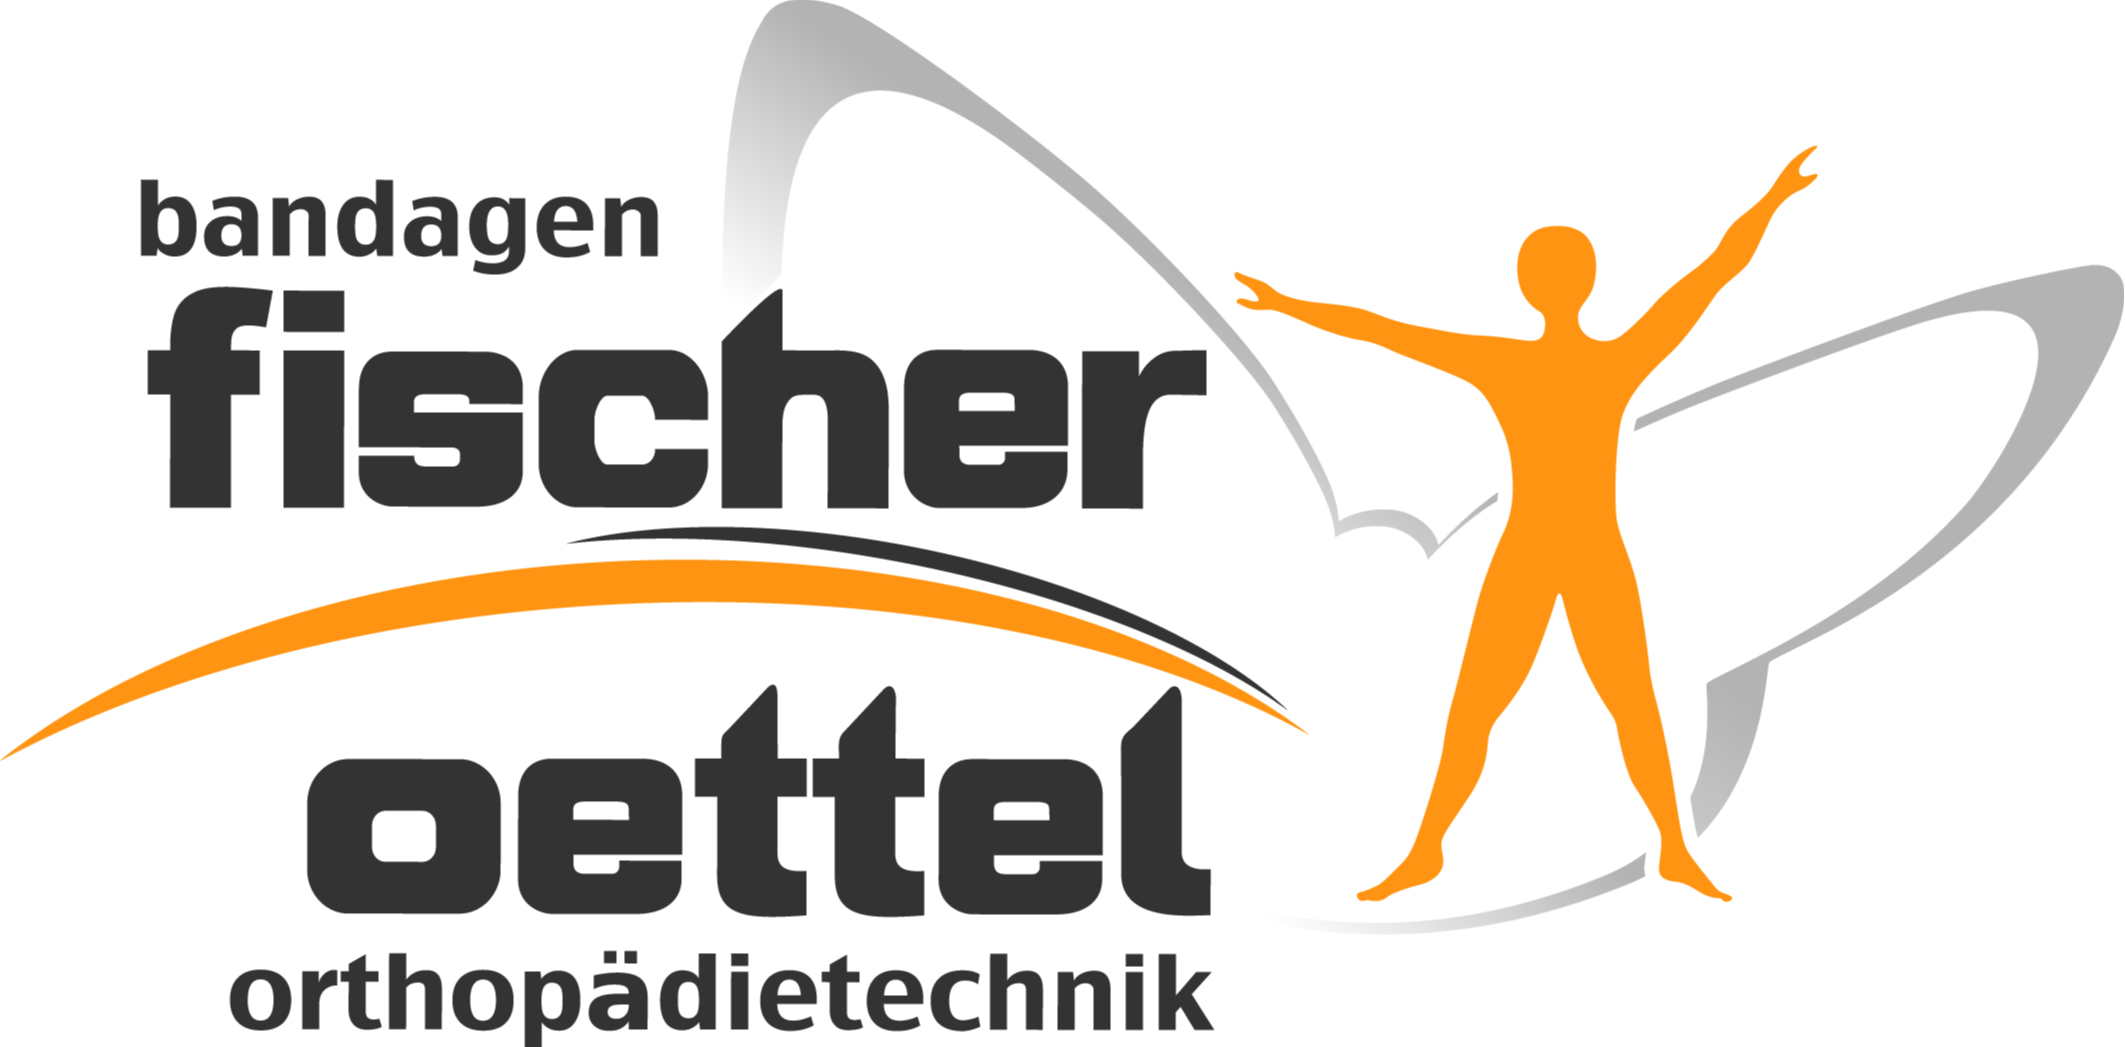 Logo der Firma Bandagen Fischer Oettel Orthopädietechnik aus Plauen